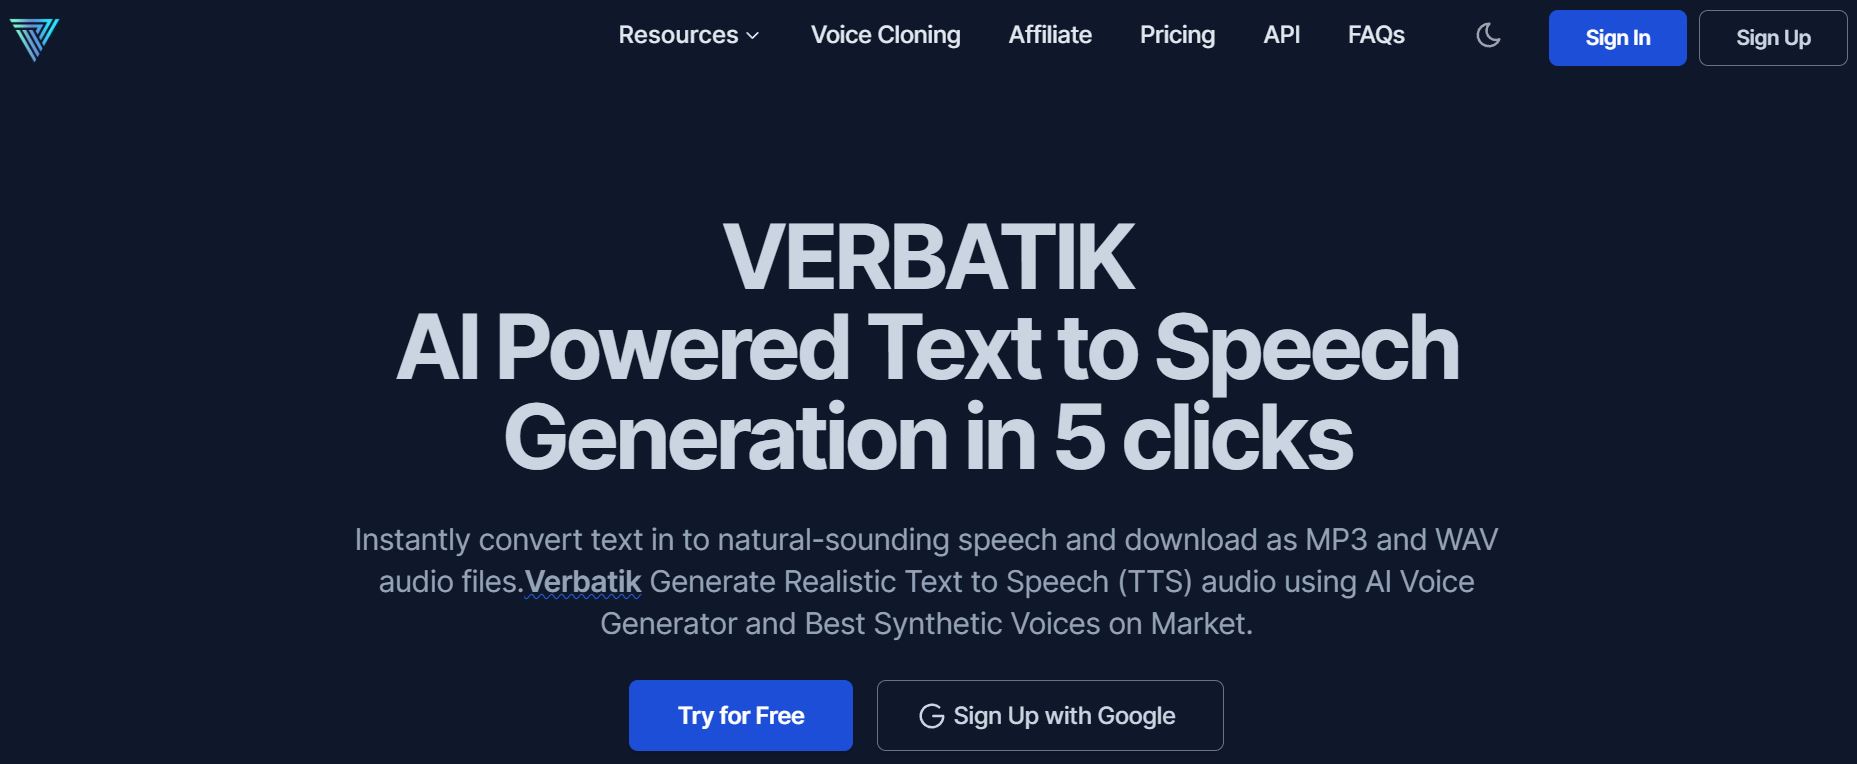 verbatik-website-screenshot